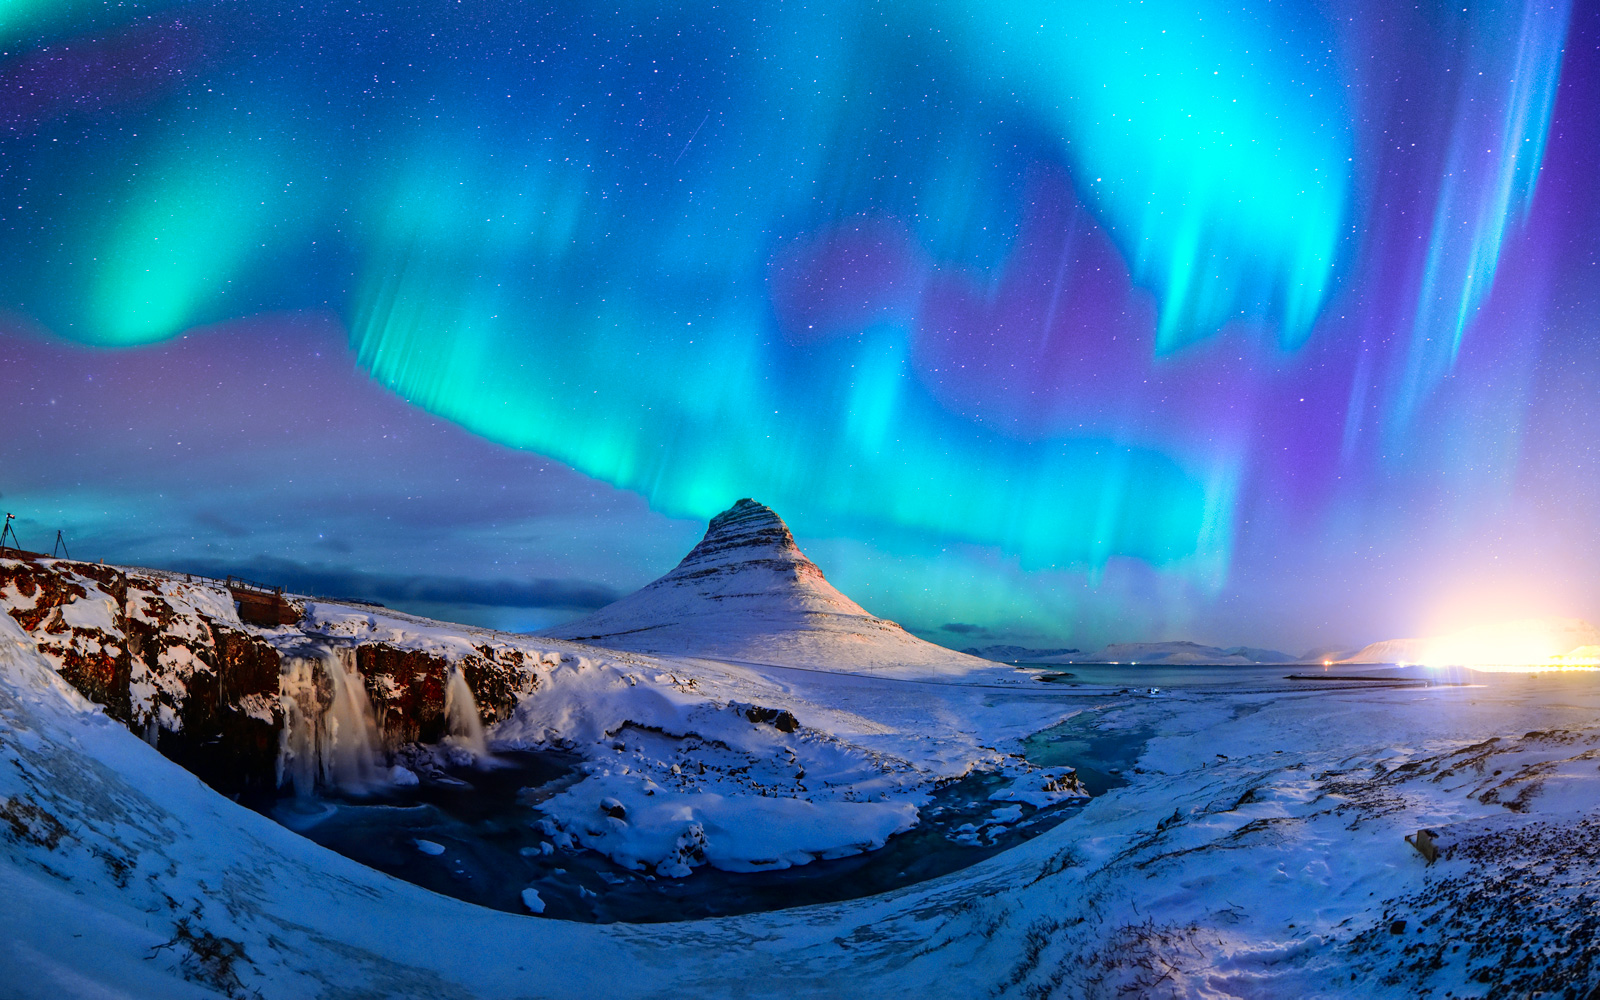              摄于冰岛极光爆发夜